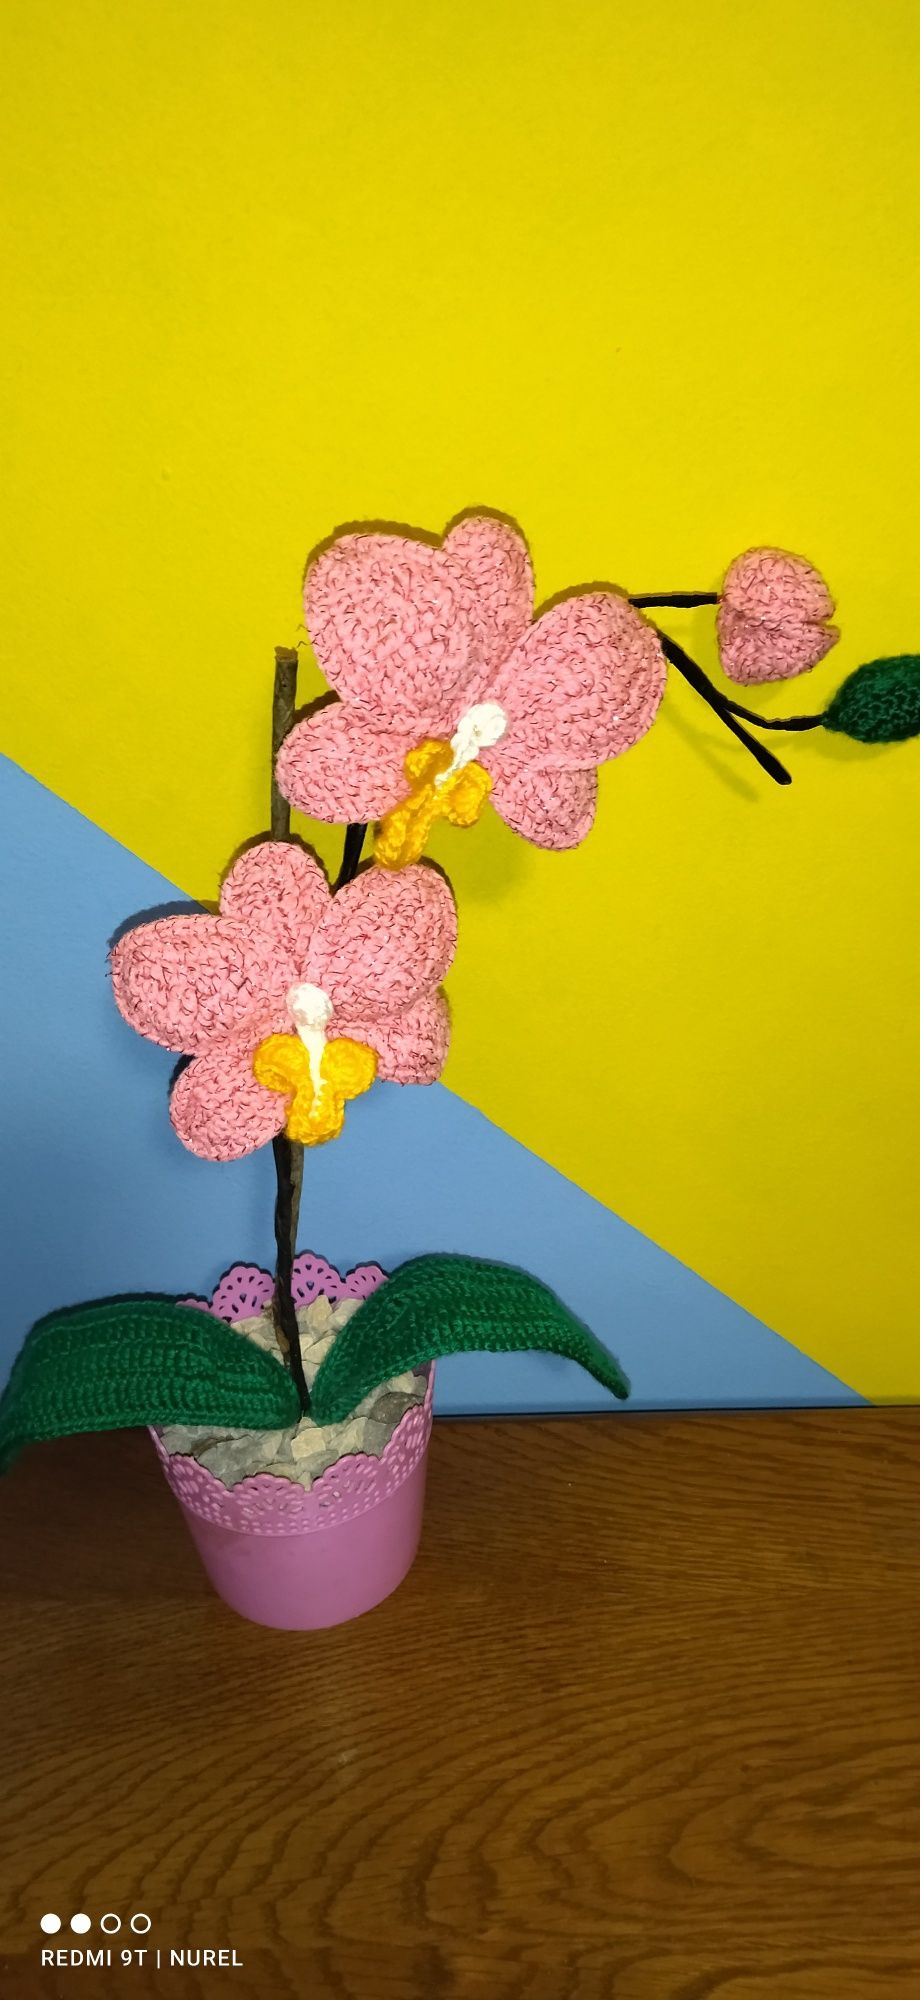 Ръчно плетена орхидея (Вечна)